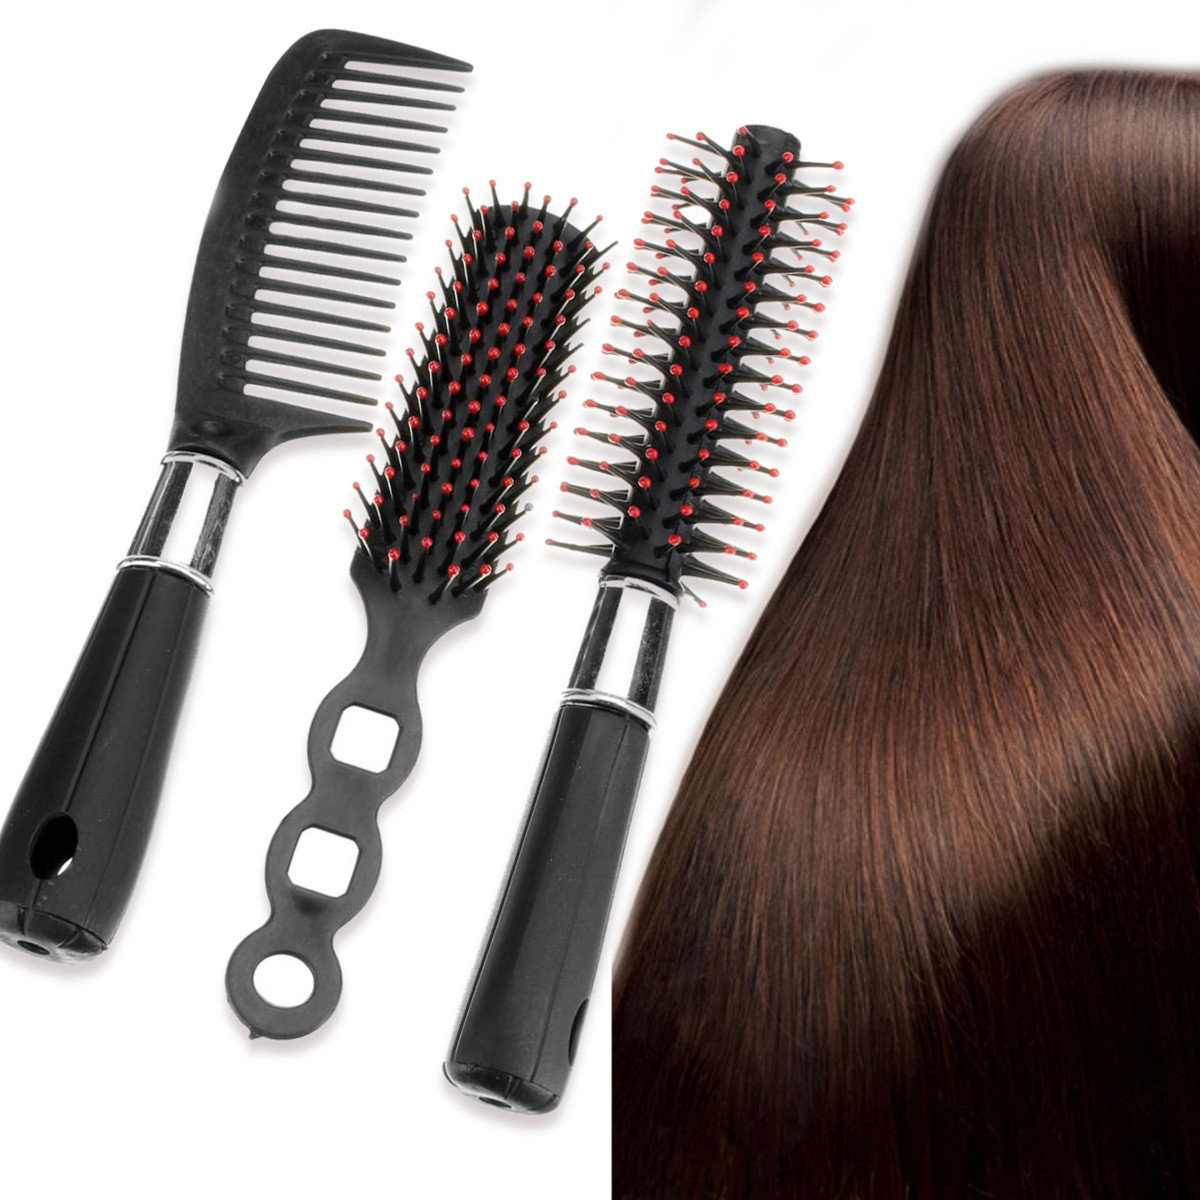 الطريقة الصحيحة لتنظيف فرشاة الشعر 